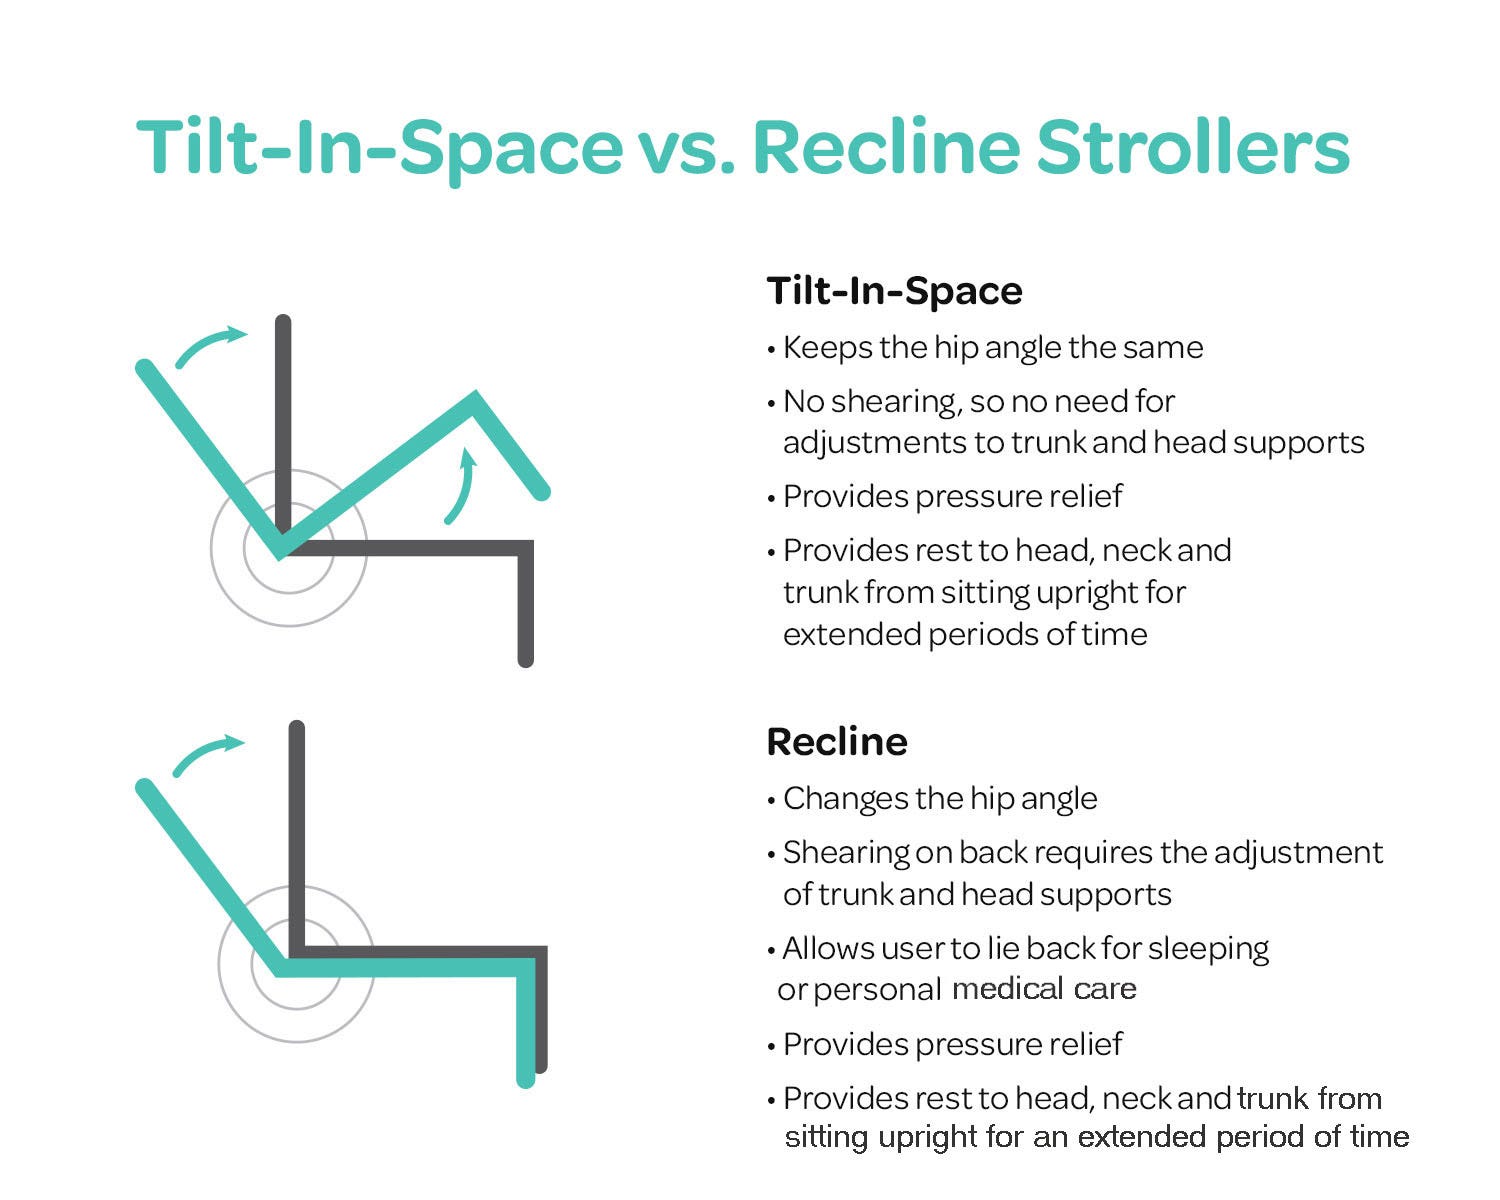 Tilt vs. Recline Stollers